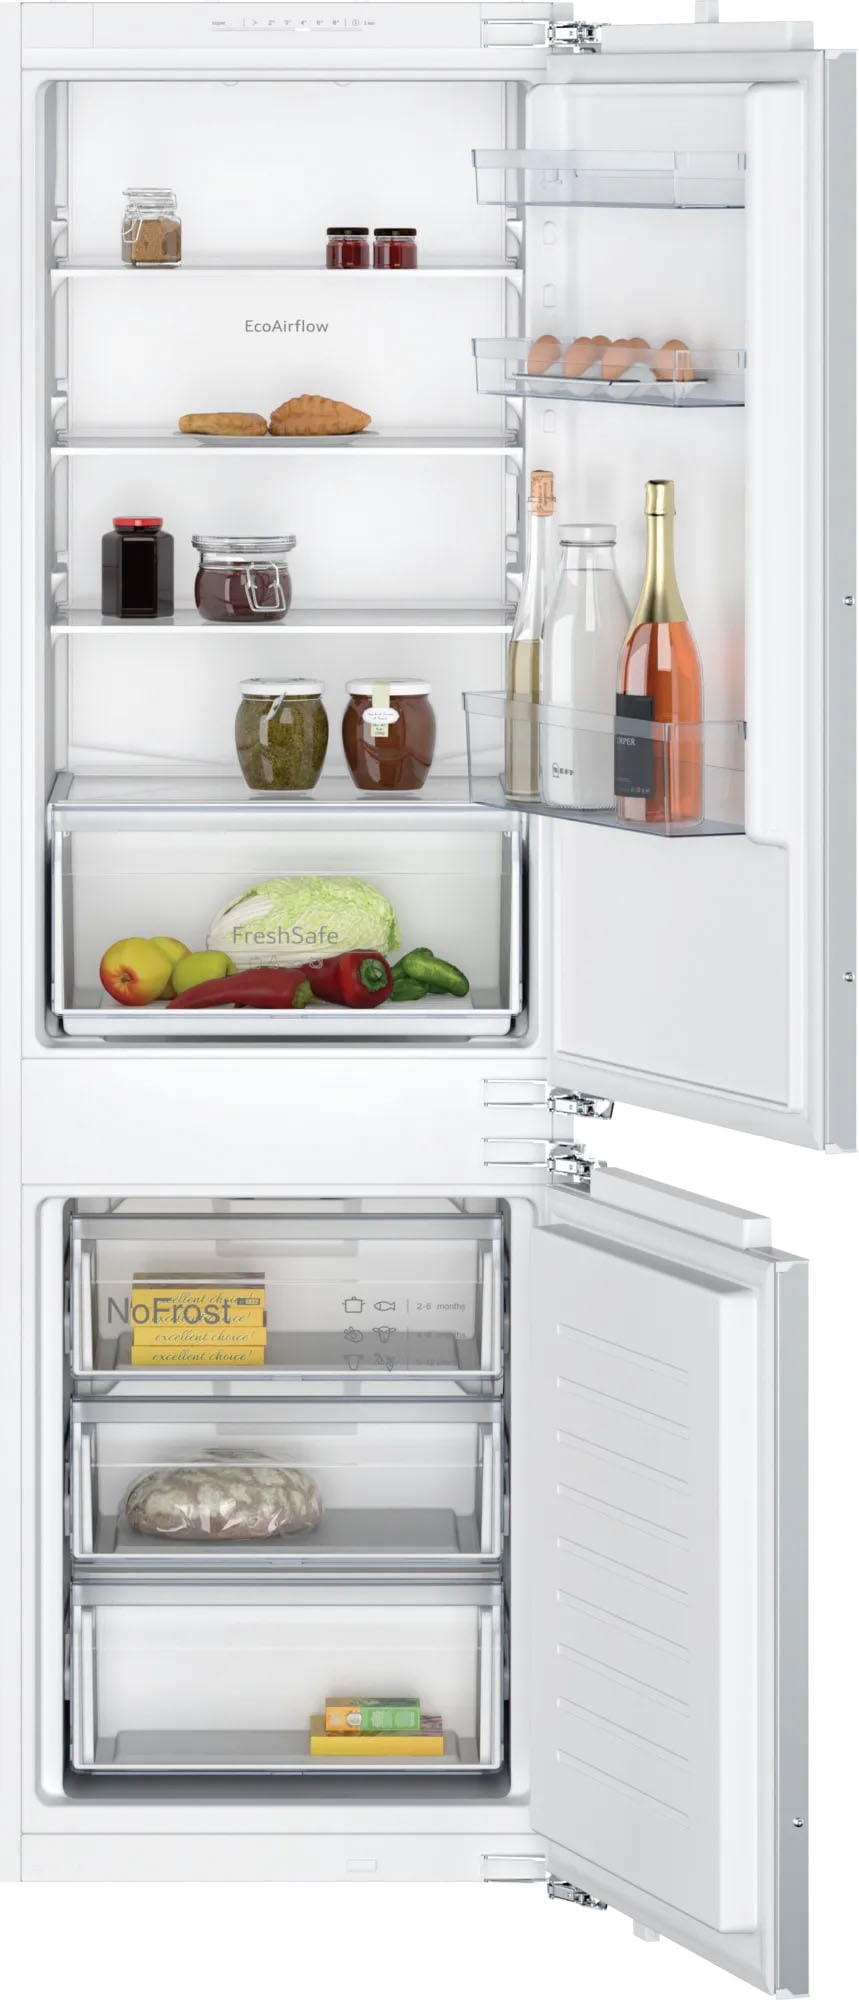 NEFF Kühlschränke mit bei Teilzahlung OTTO flexibler